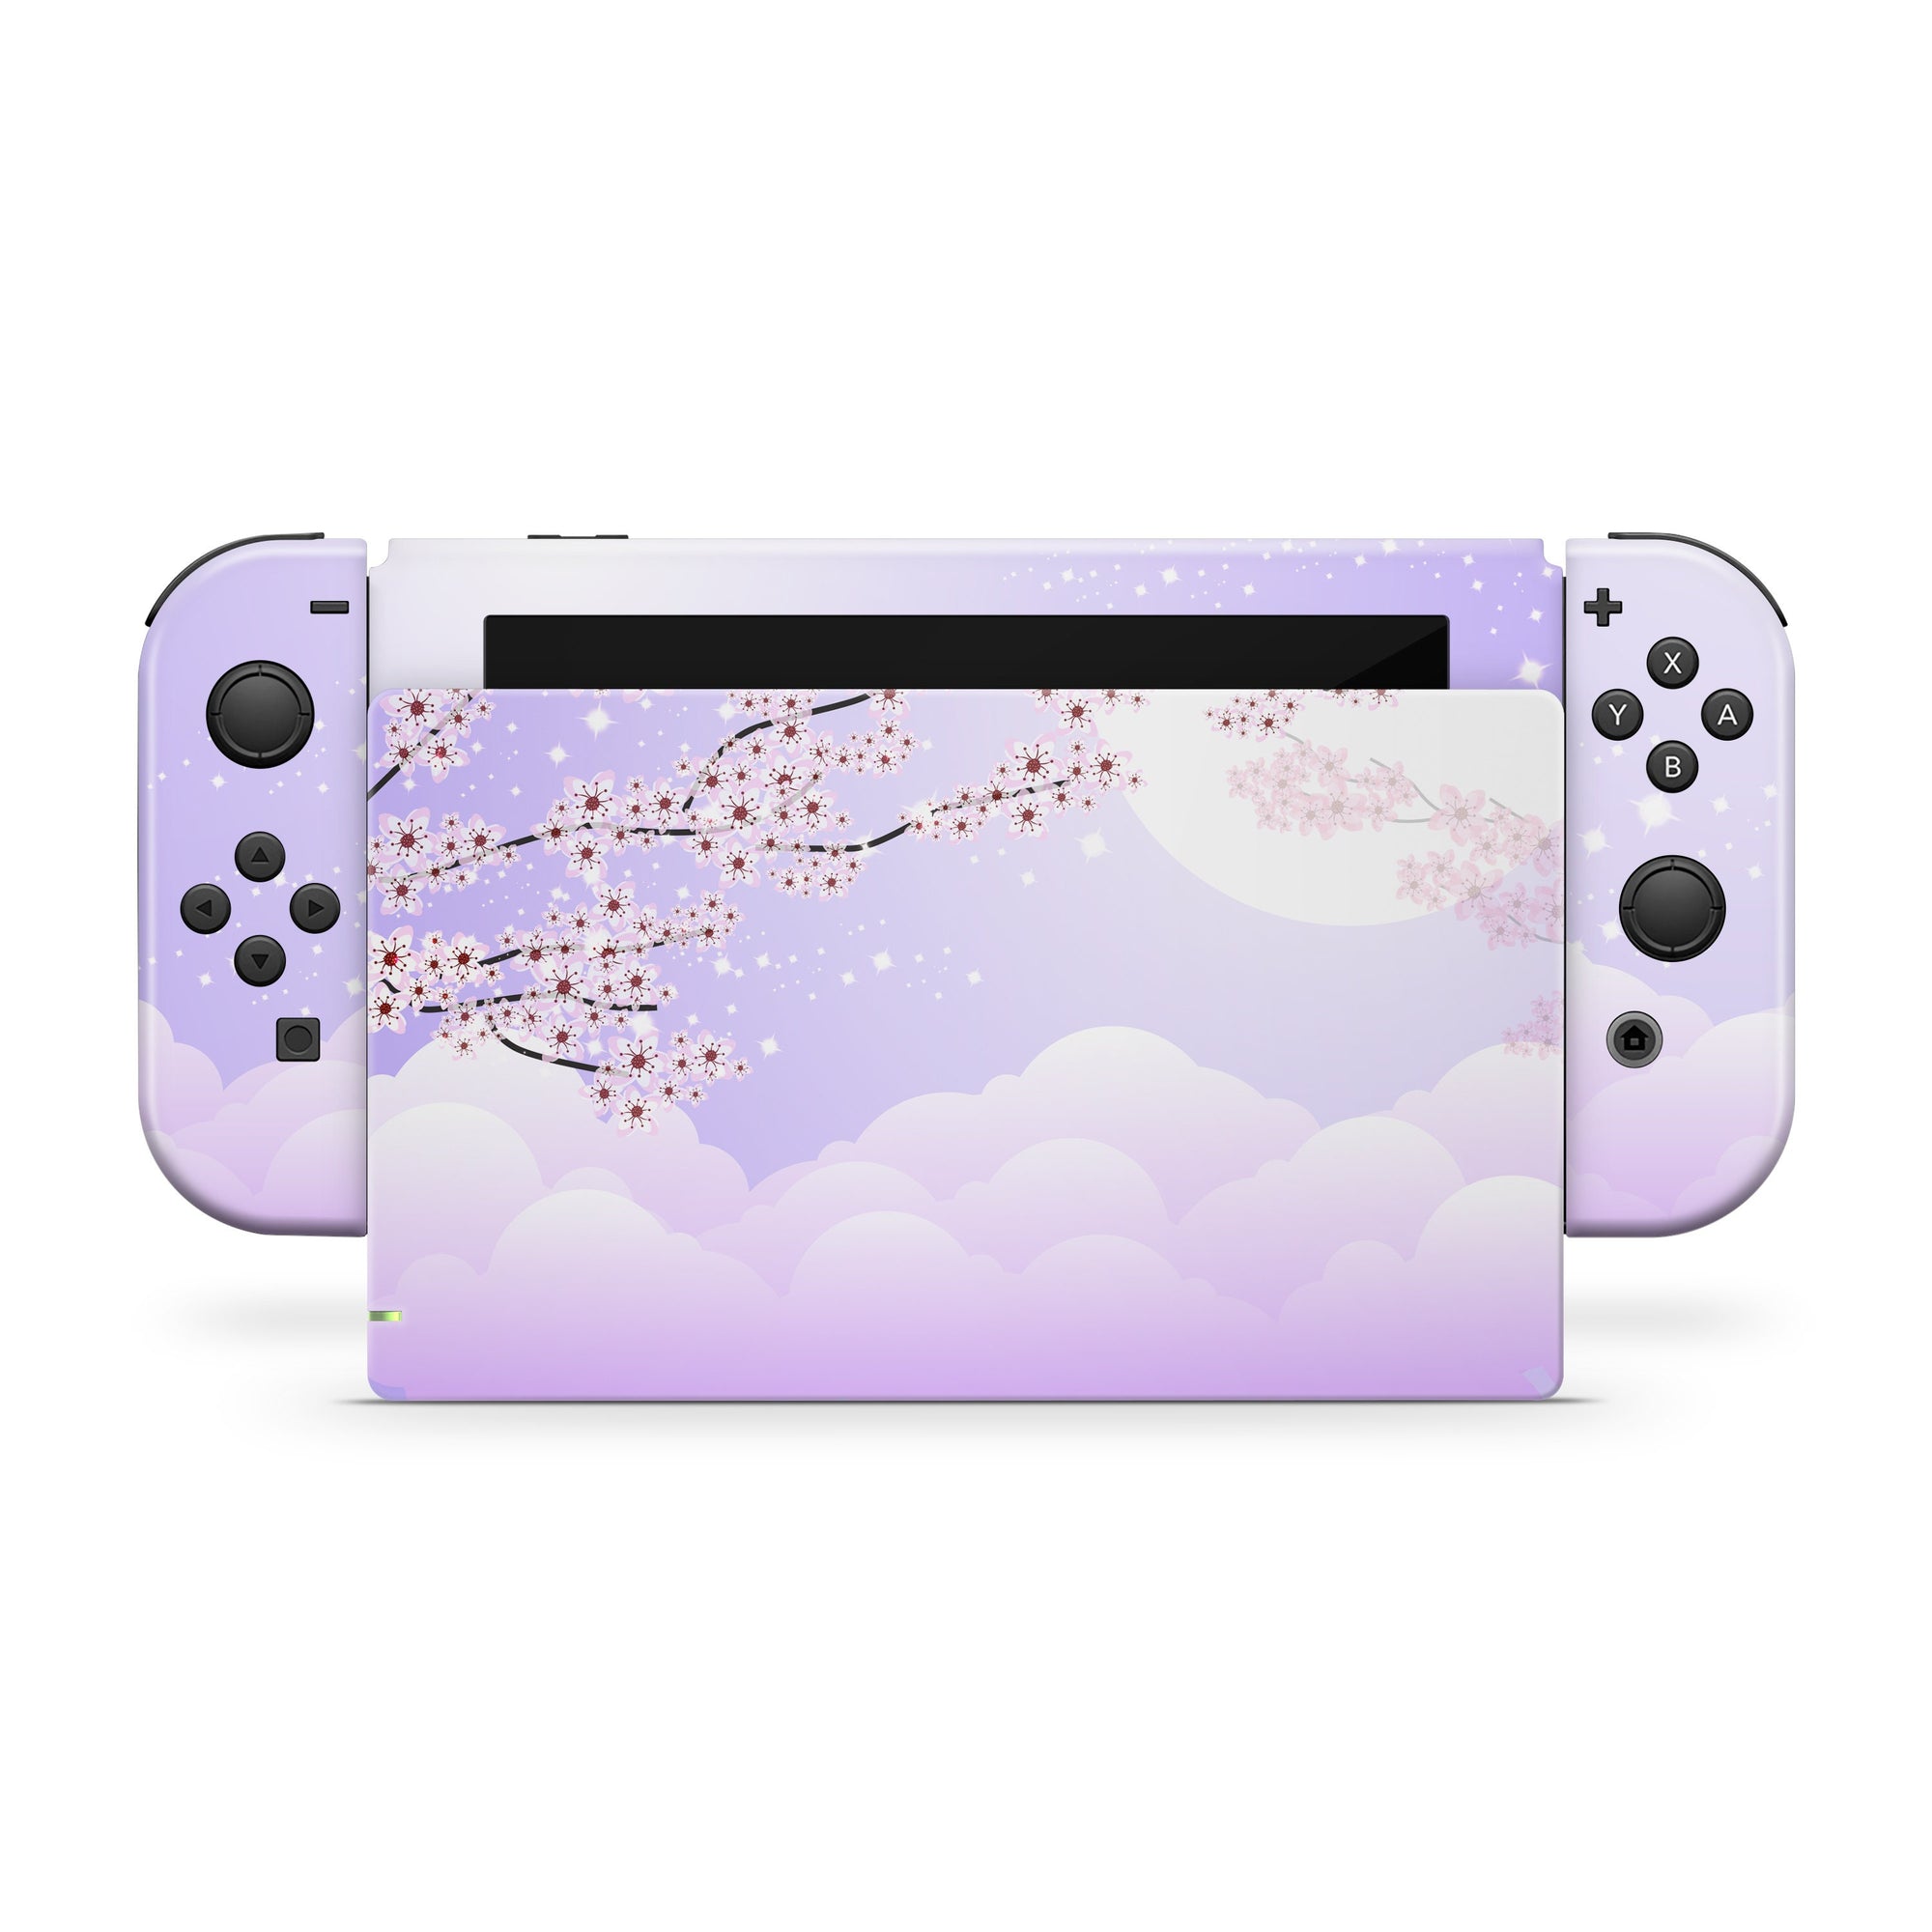 Nintendo switches skin Cherries blossoms, Purple Flowers sakura switch skin Full cover 3m